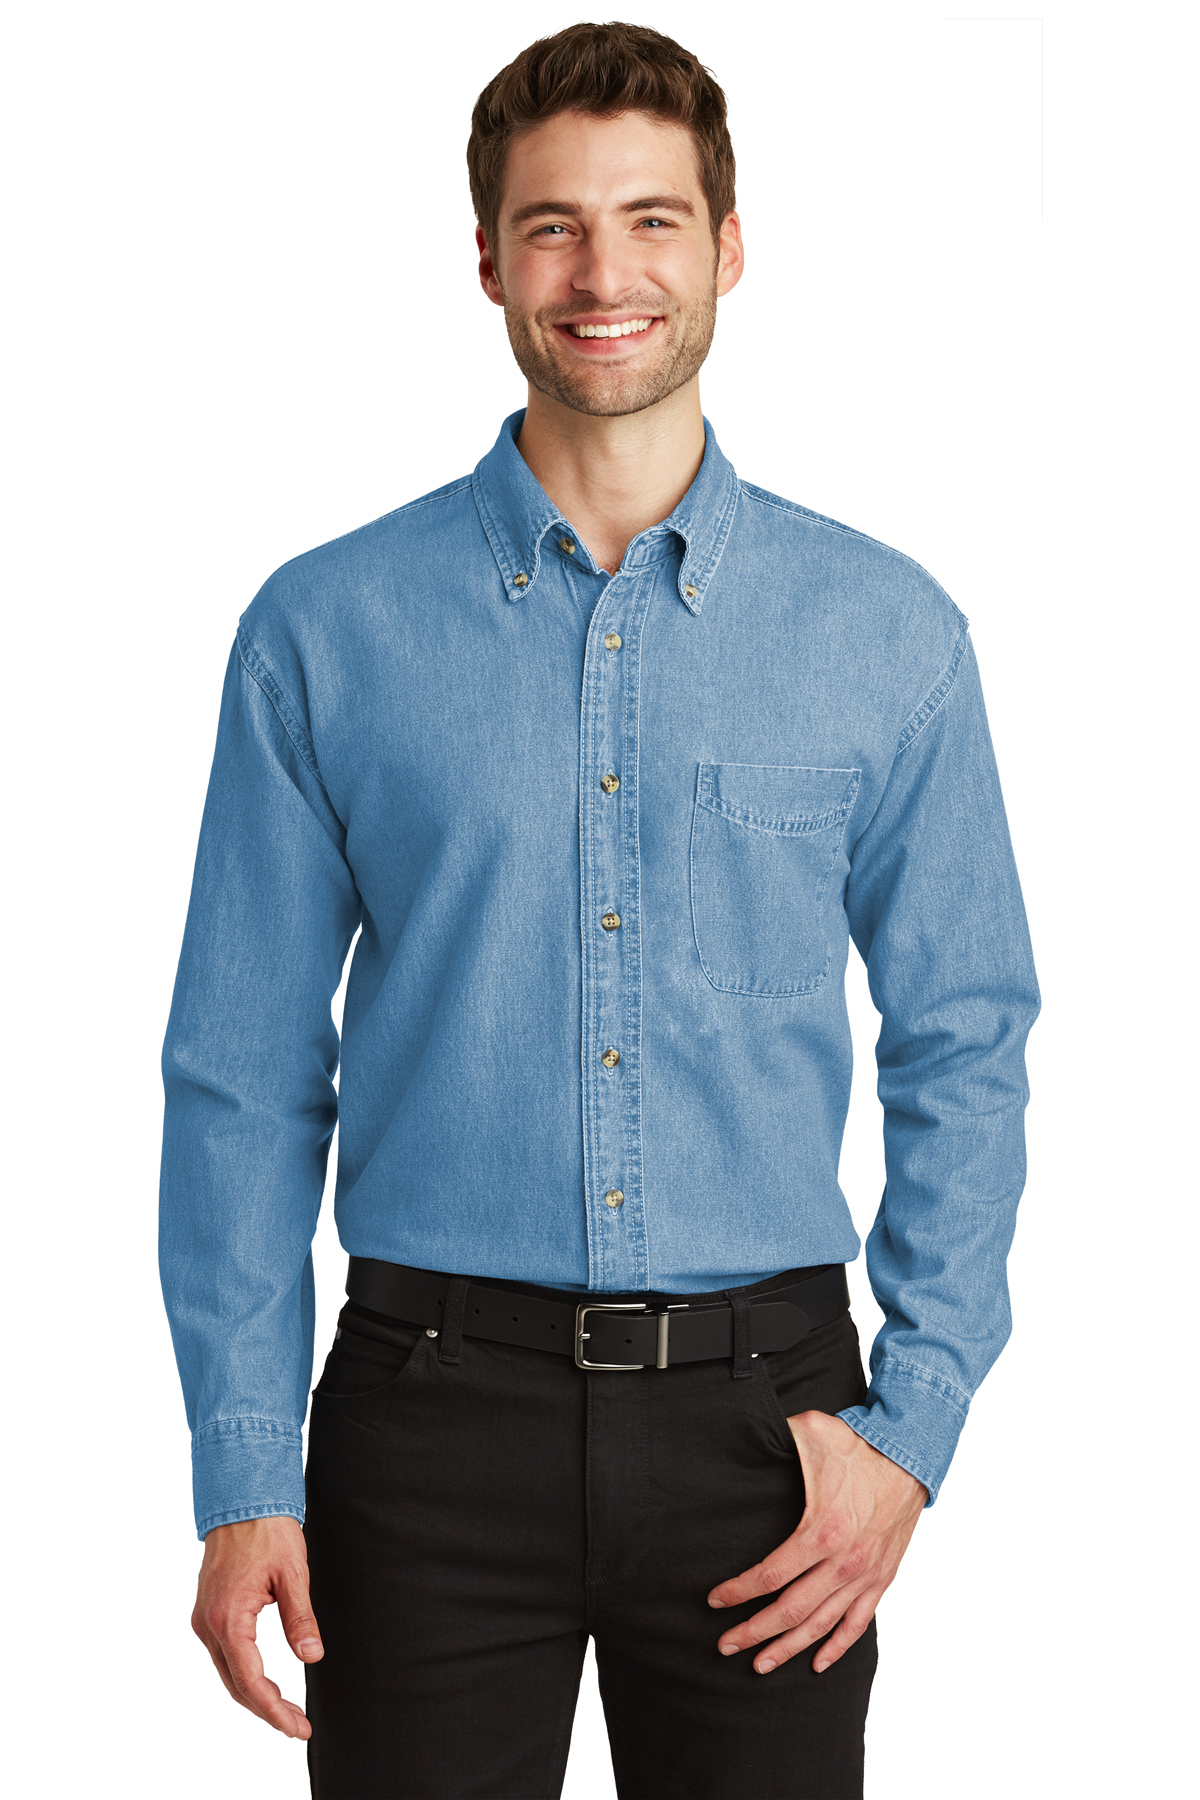 Eddie Bauer Denim Shirt Womens Large Blue Jean Button Up Fitted 100% Cotton  | eBay